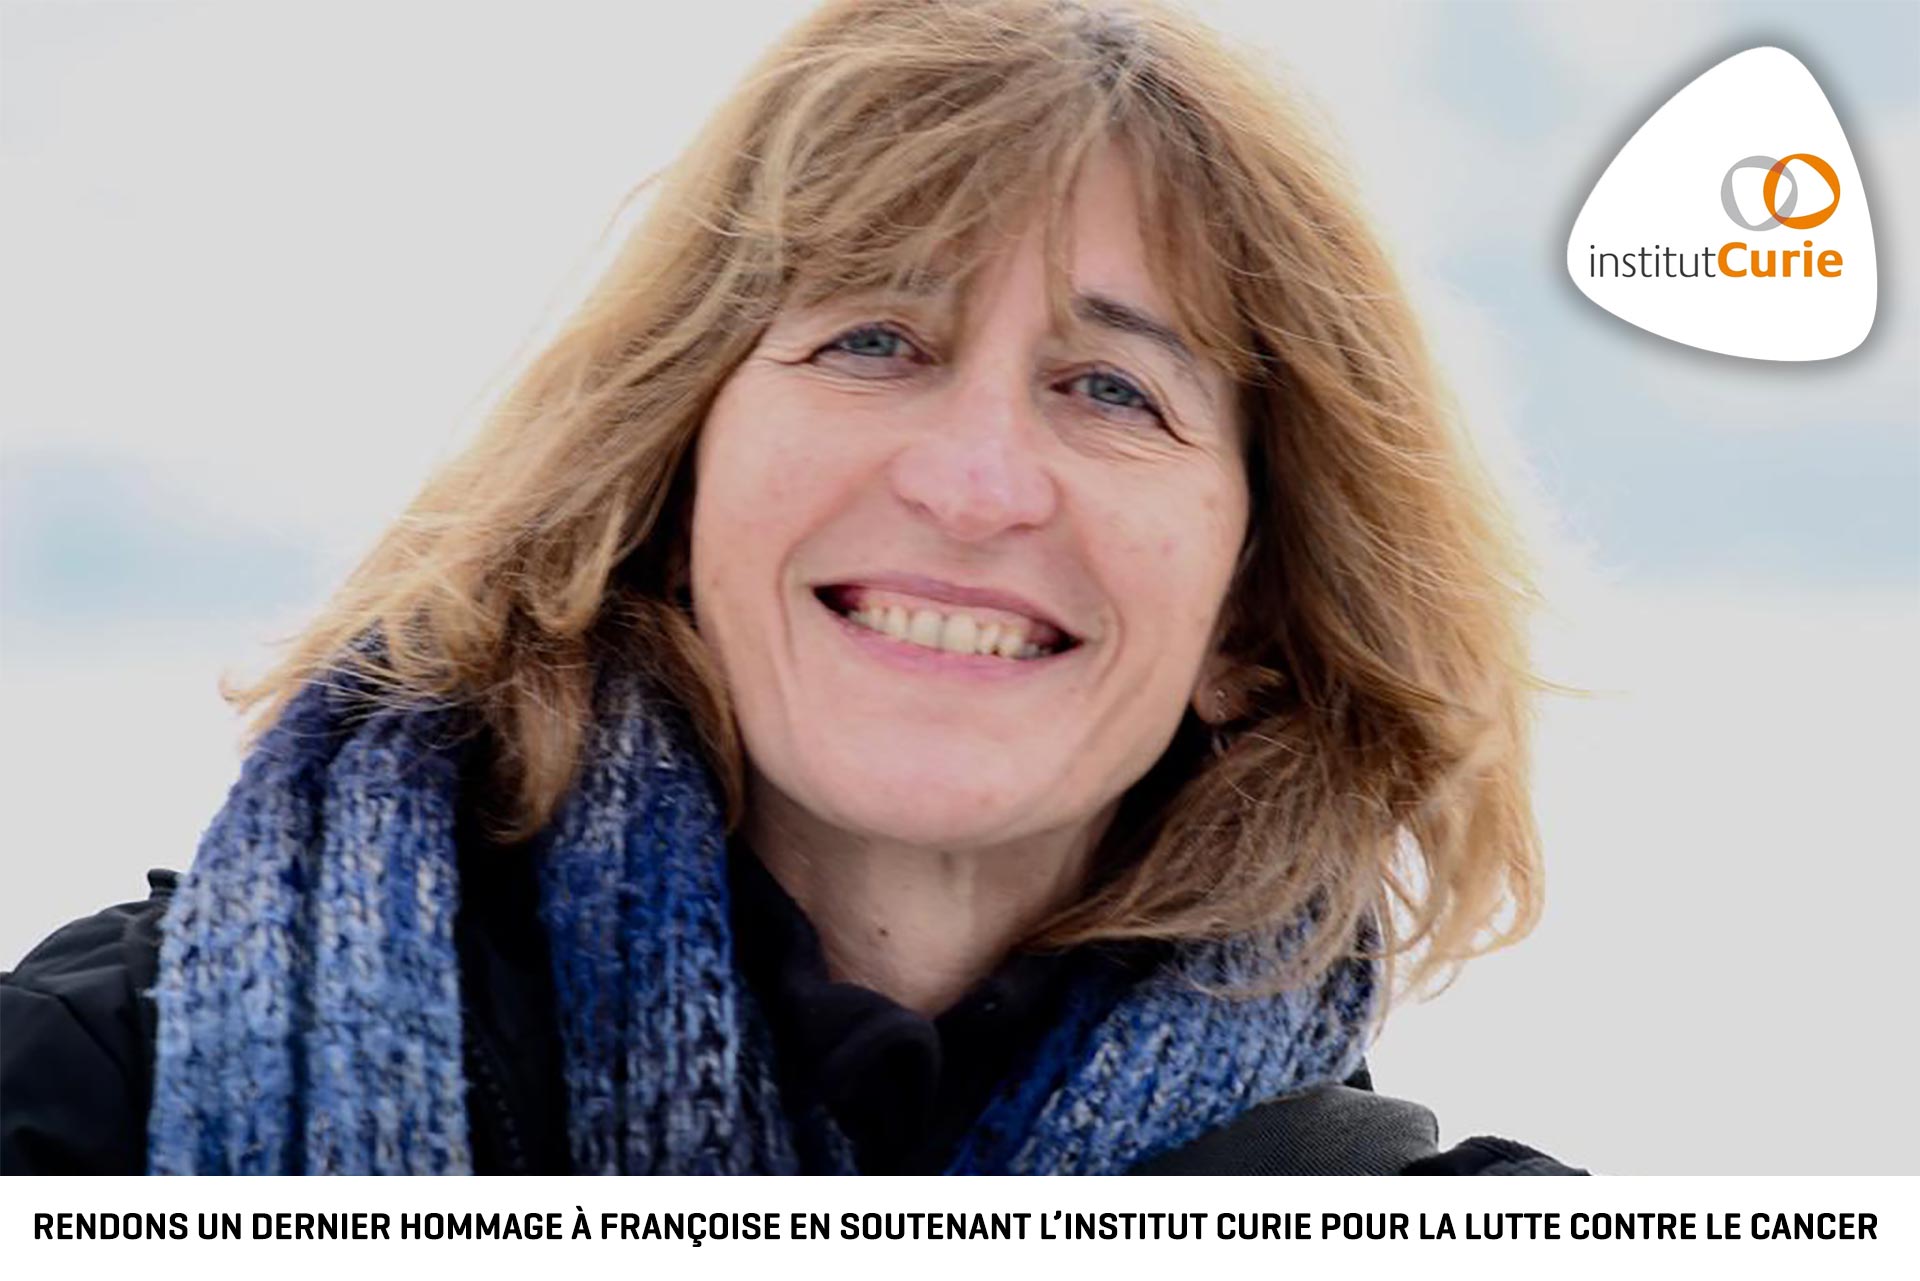 Rendons un dernier hommage à Françoise en soutenant l'institut Curie la lutte contre le cancer.